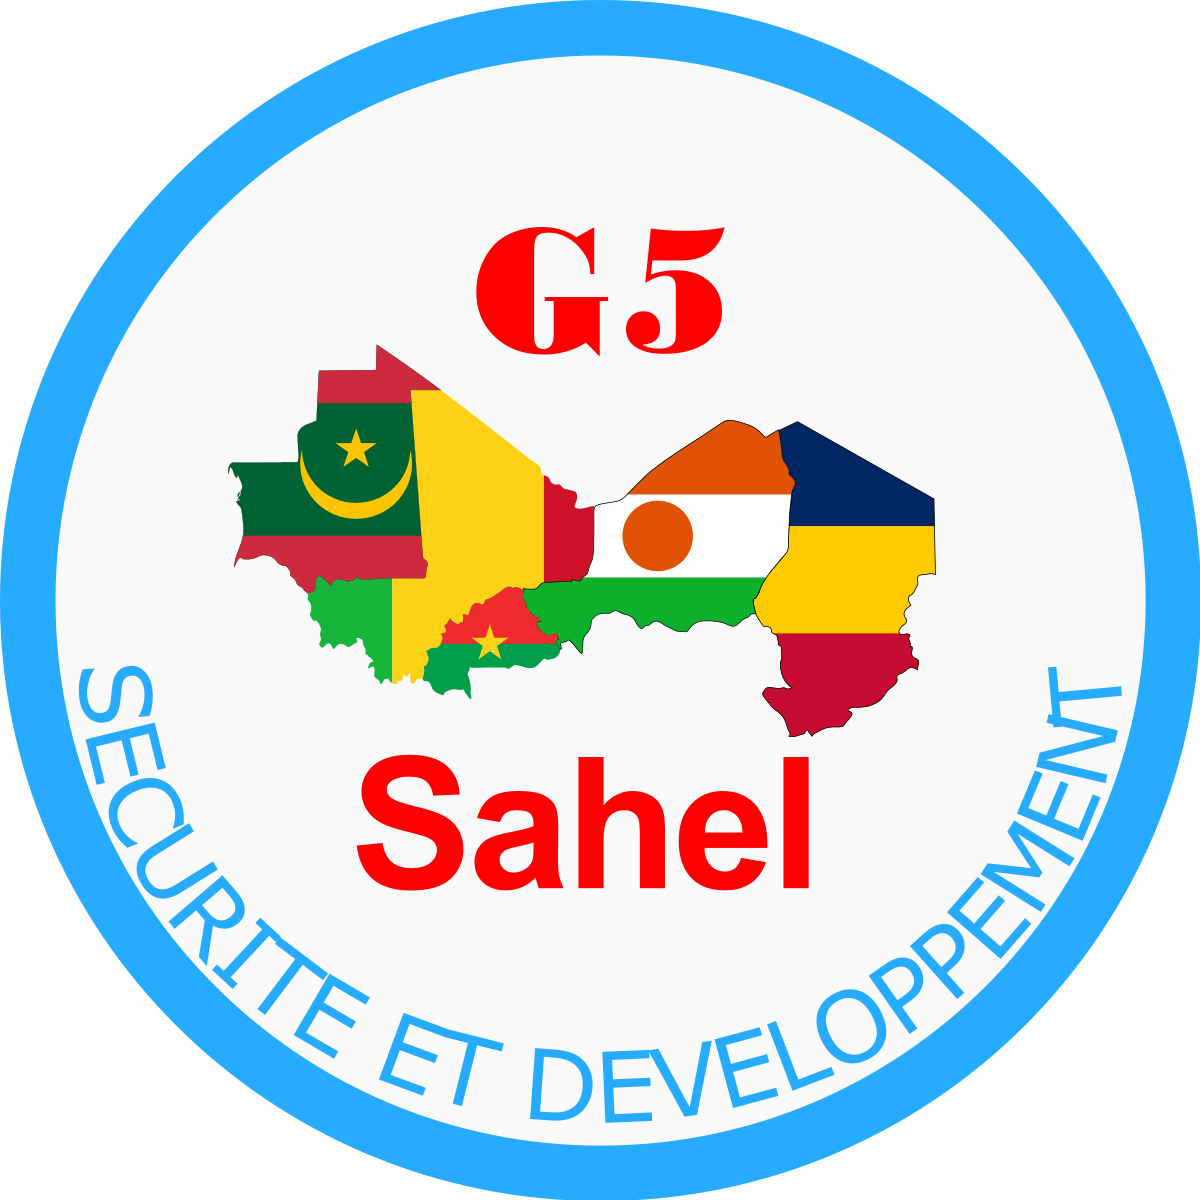 Retrait du Mali du G5 Sahel : « Cette décision est lourde de conséquences », selon le président en exercice